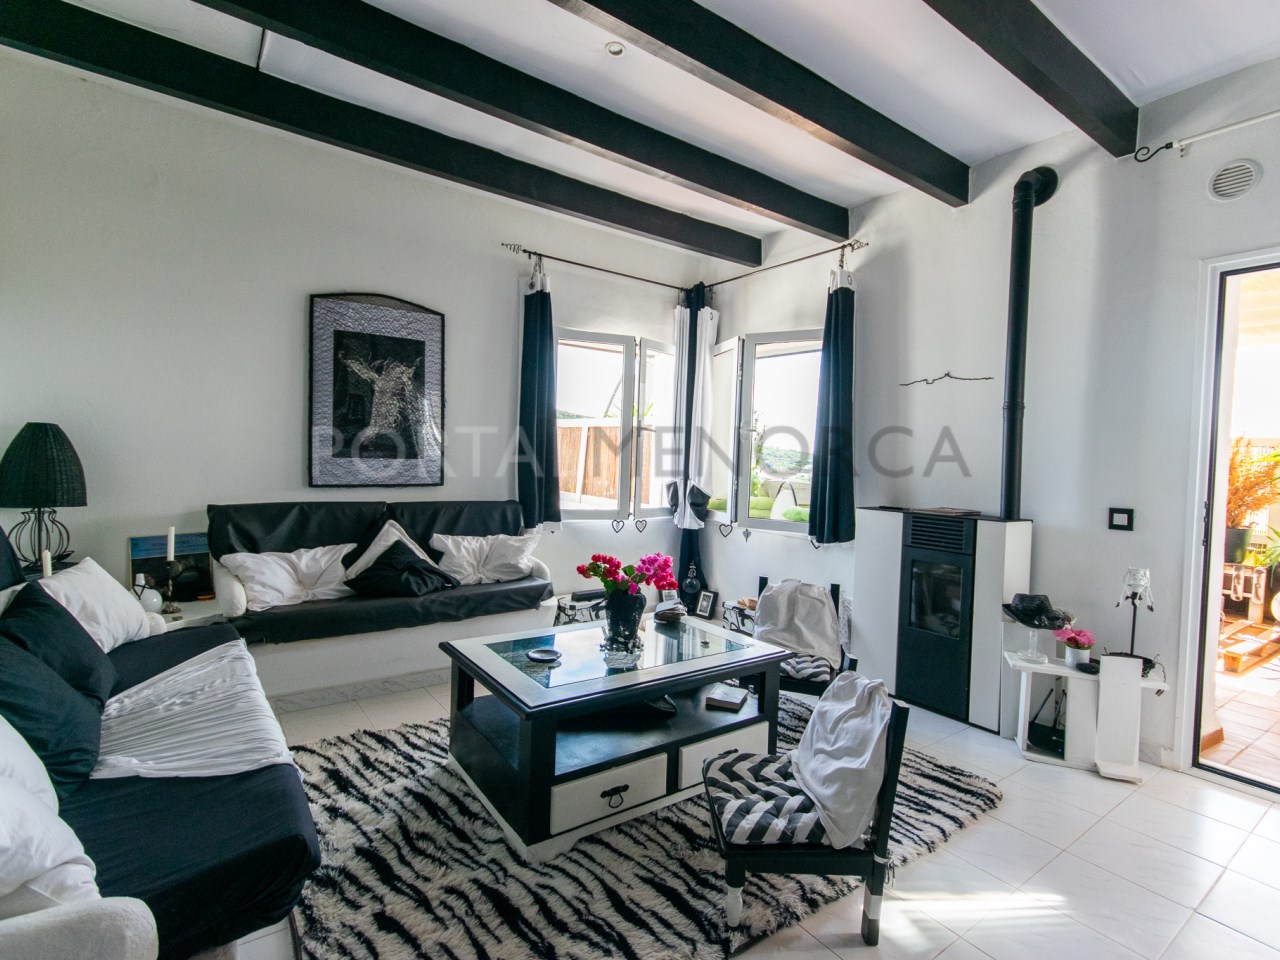 Salon d'un appartement de 3 chambres avec une vue magnifique sur Cala Tirant et les plages de Fornells